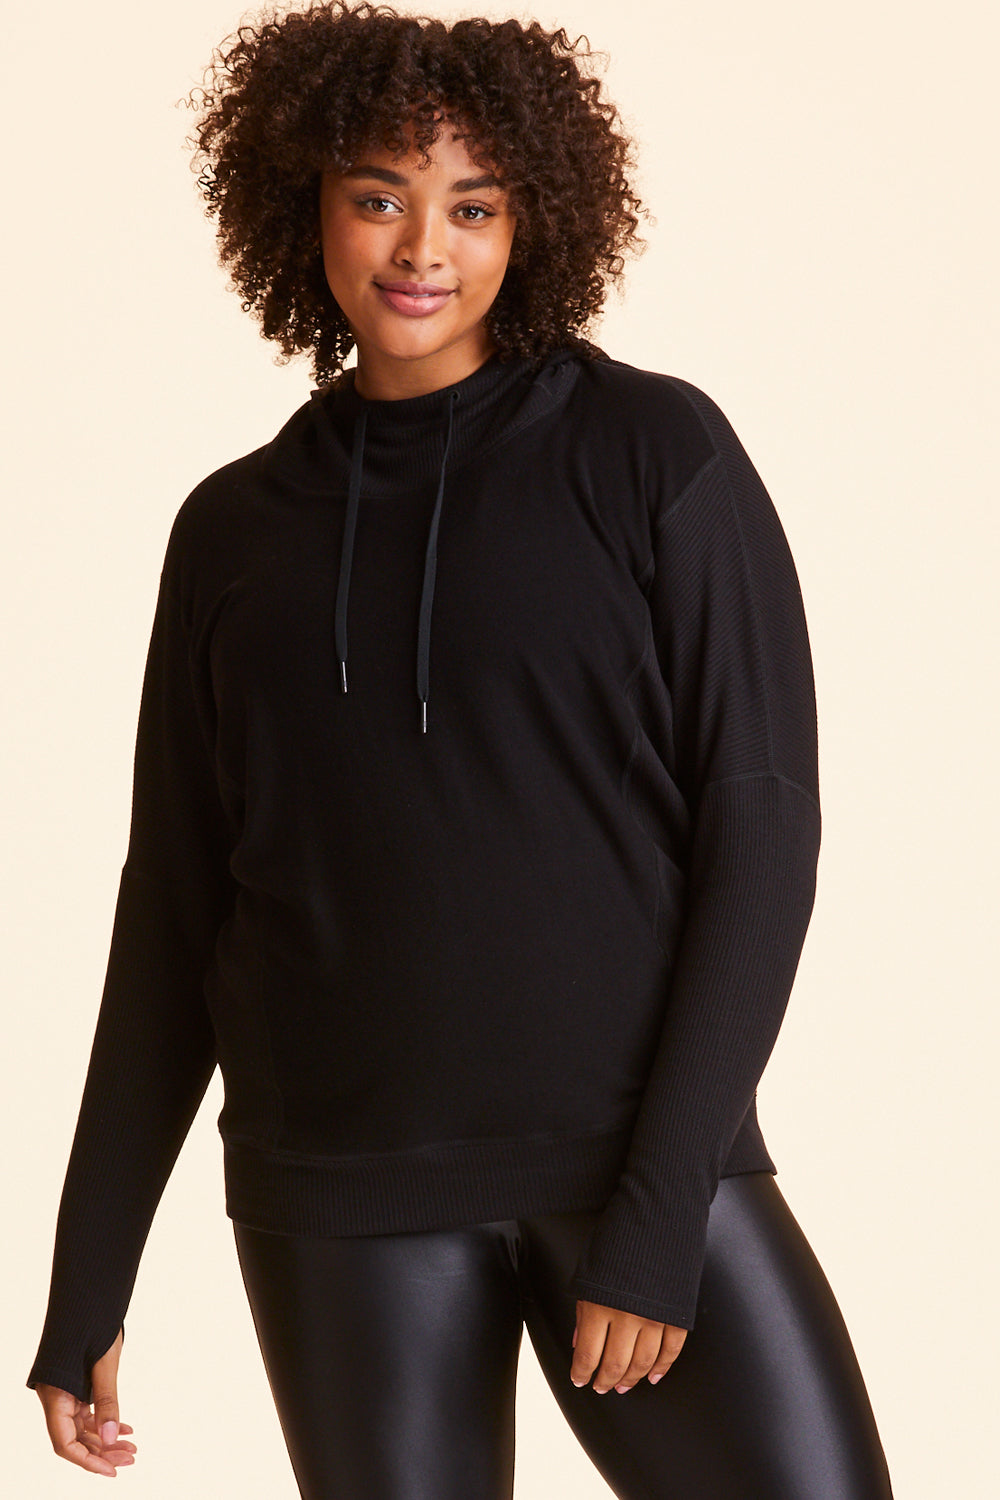 NWT Dolman Sleeve Hoodie Sweatshirt Medium Black  Sweatshirt fabric, Women  long sleeve, Sweatshirts hoodie